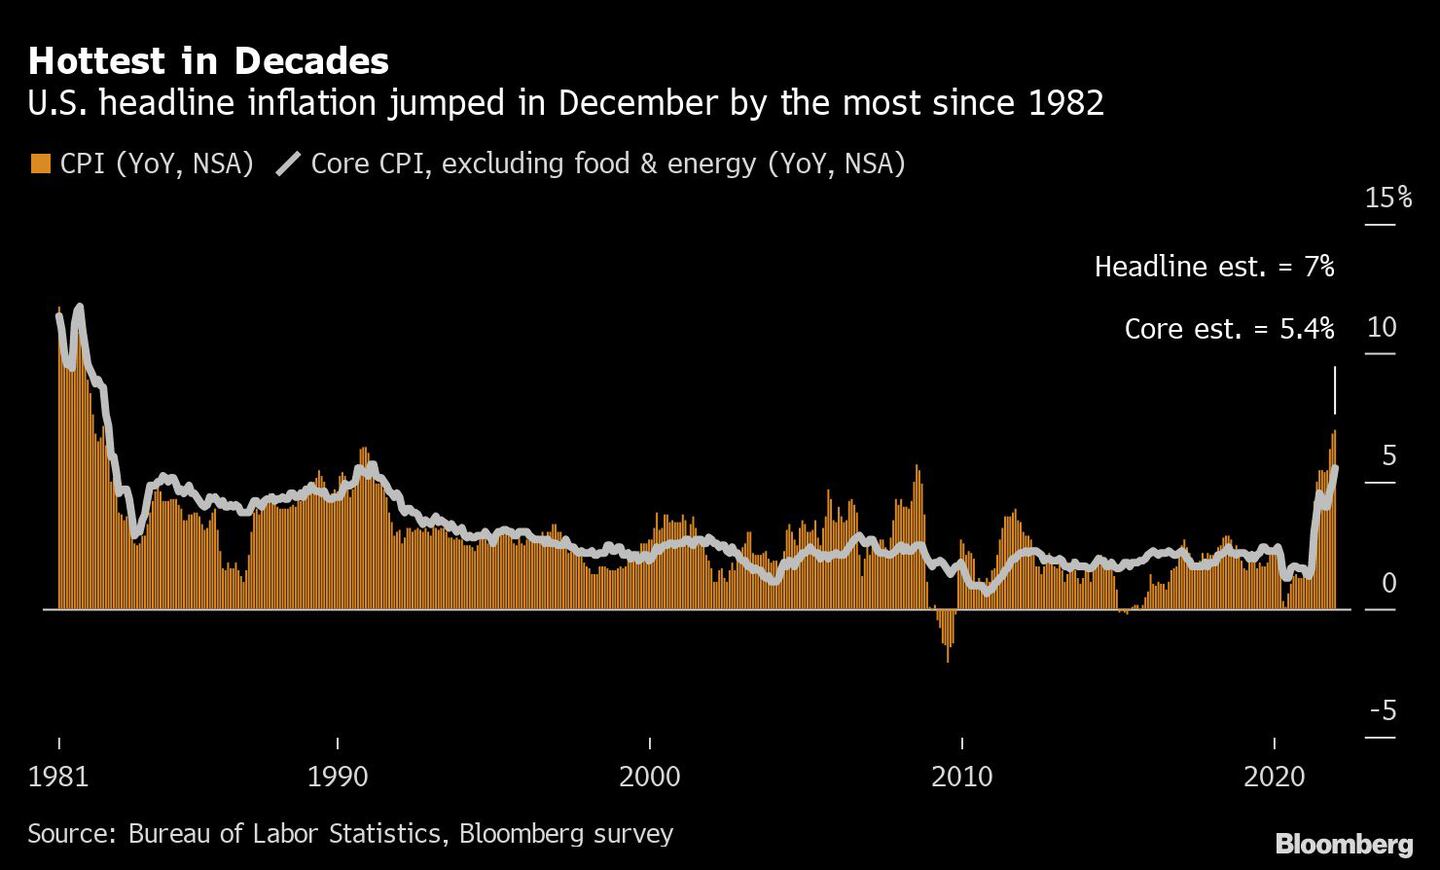 Lo más caliente en décadas
 La inflación general de Estados Unidos experimentó en diciembre el mayor salto desde 1982
Naranja: IPC (a/a, NSA)
Blanco: IPC básico, excluyendo alimentos y energía (a/a, NSA)dfd